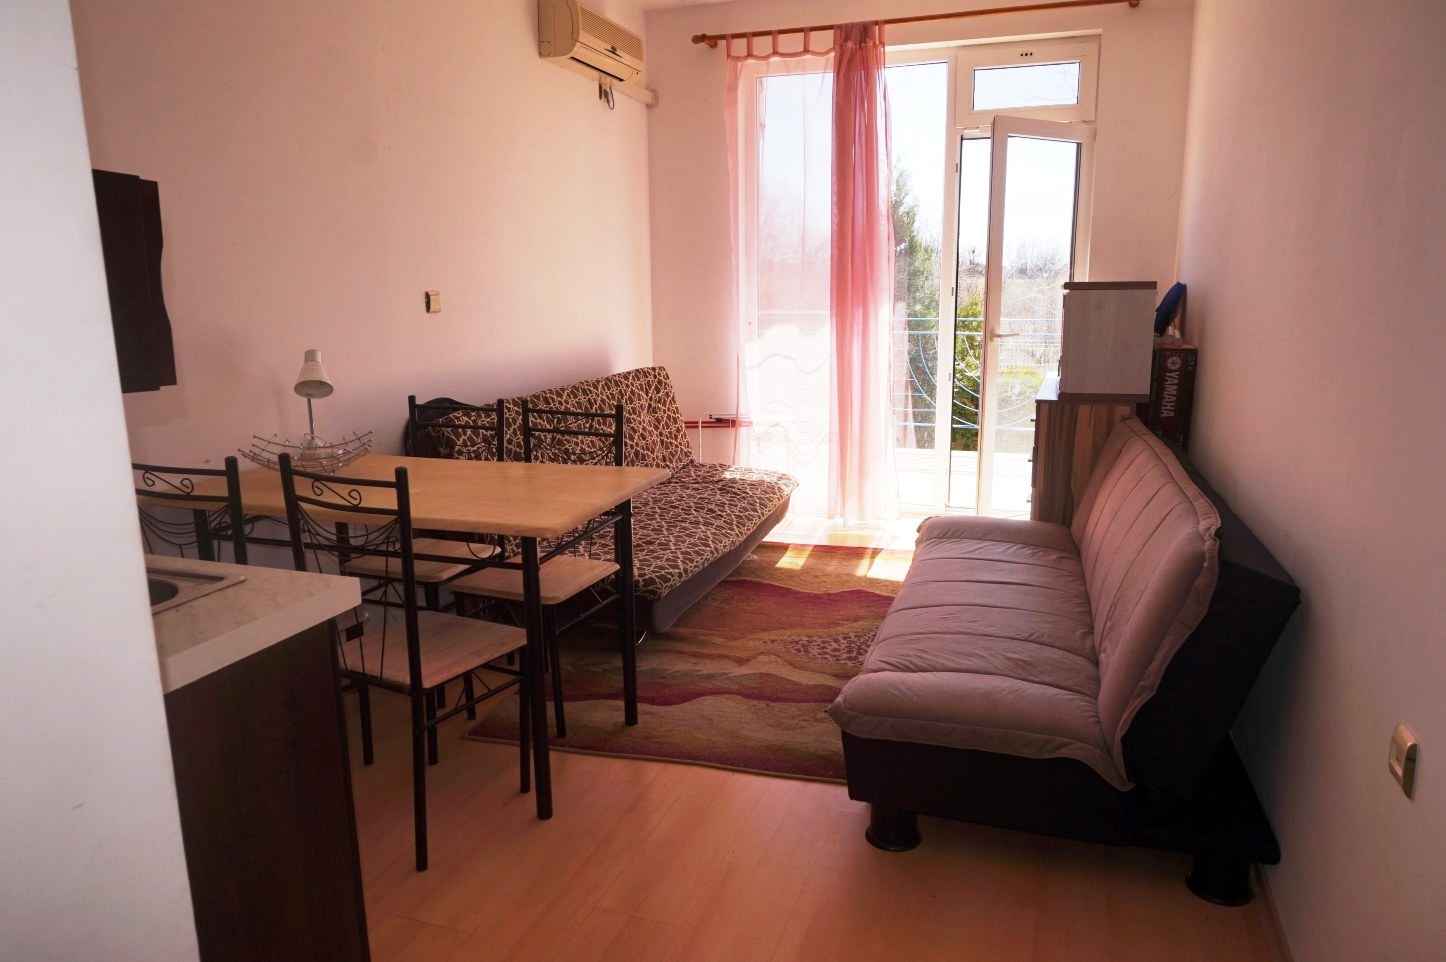 27,76sq.m studio apartment for sale in Bulgaria